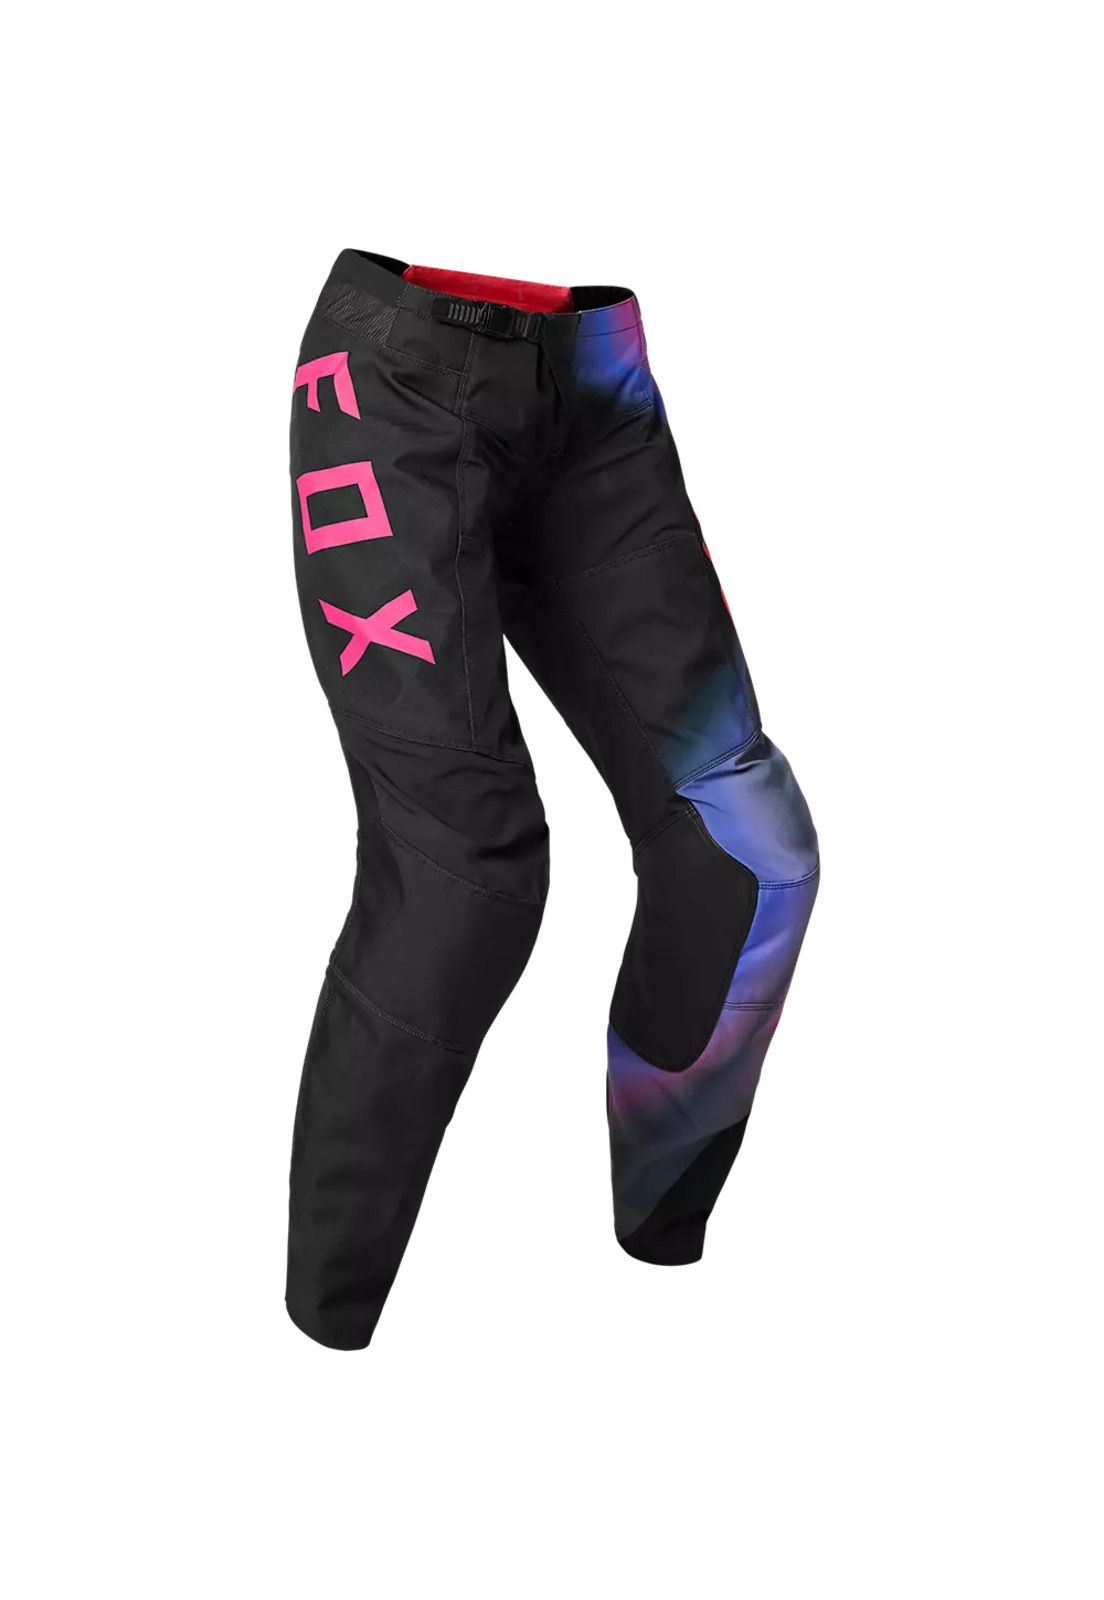 Pantalon Moto Mujer 180 Toxsyk Negro/Rosado Fox